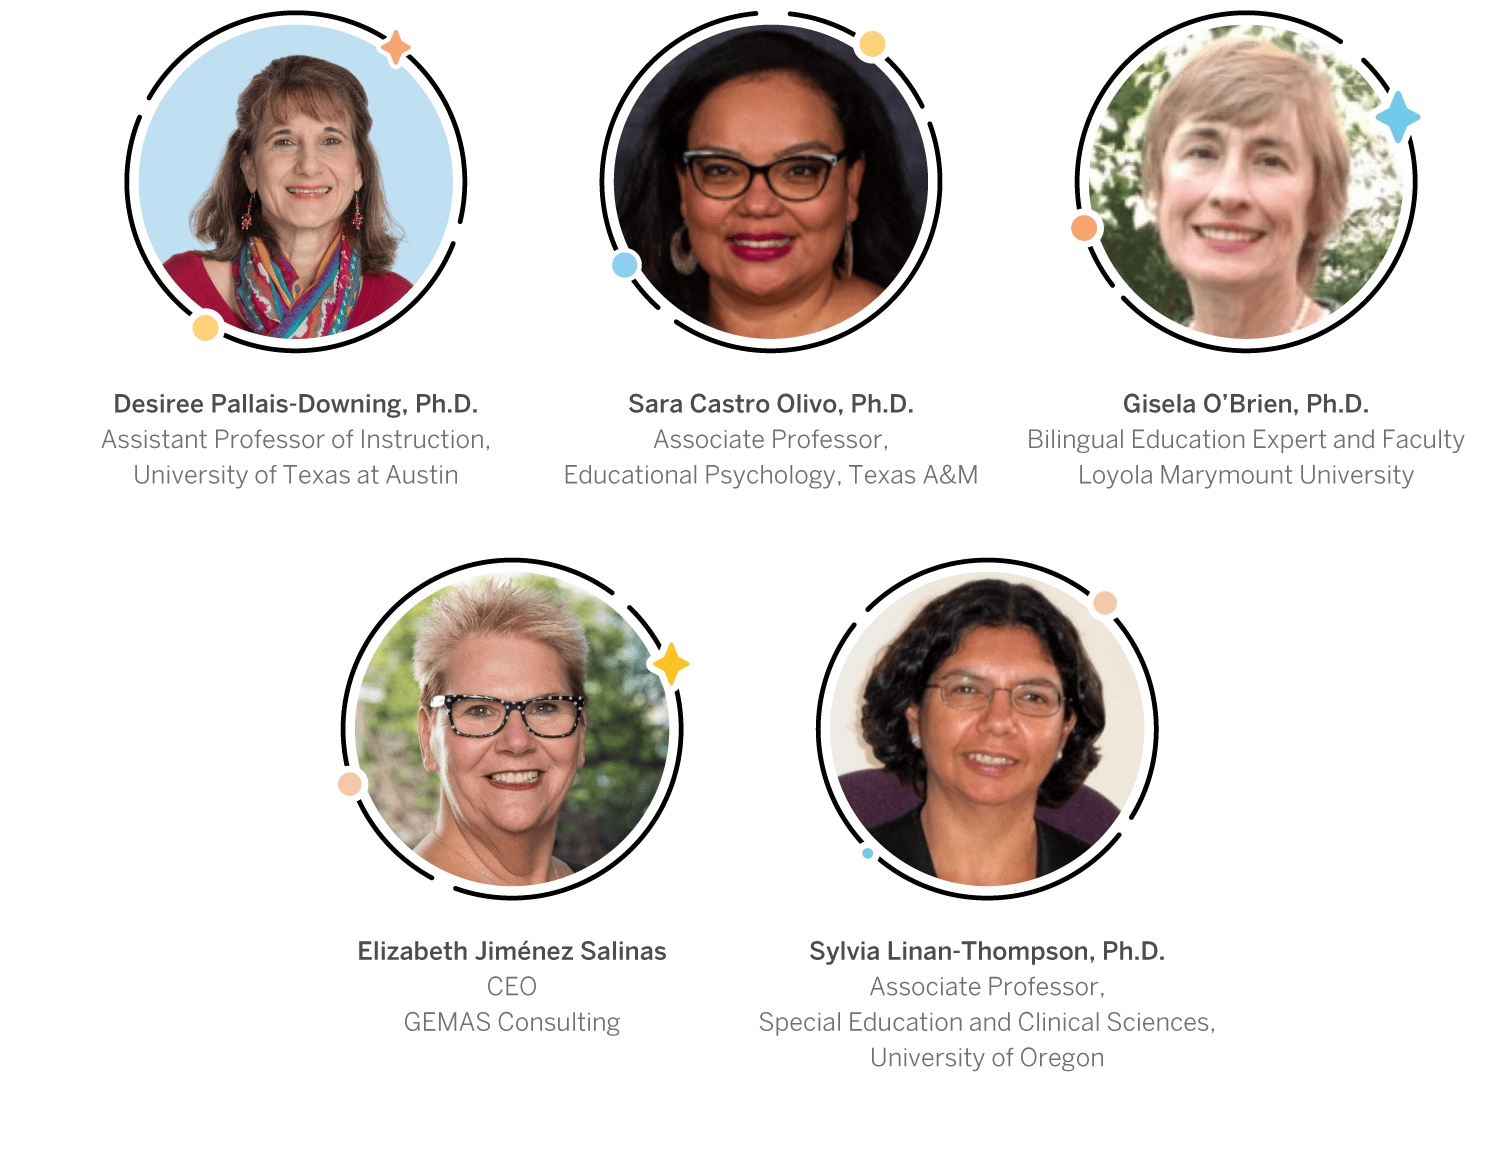 Cinco retratos profesionales de académicas y líderes en educación, especializadas en alfabetización bilingüe, conectados por líneas que indican colaboración o asociación.